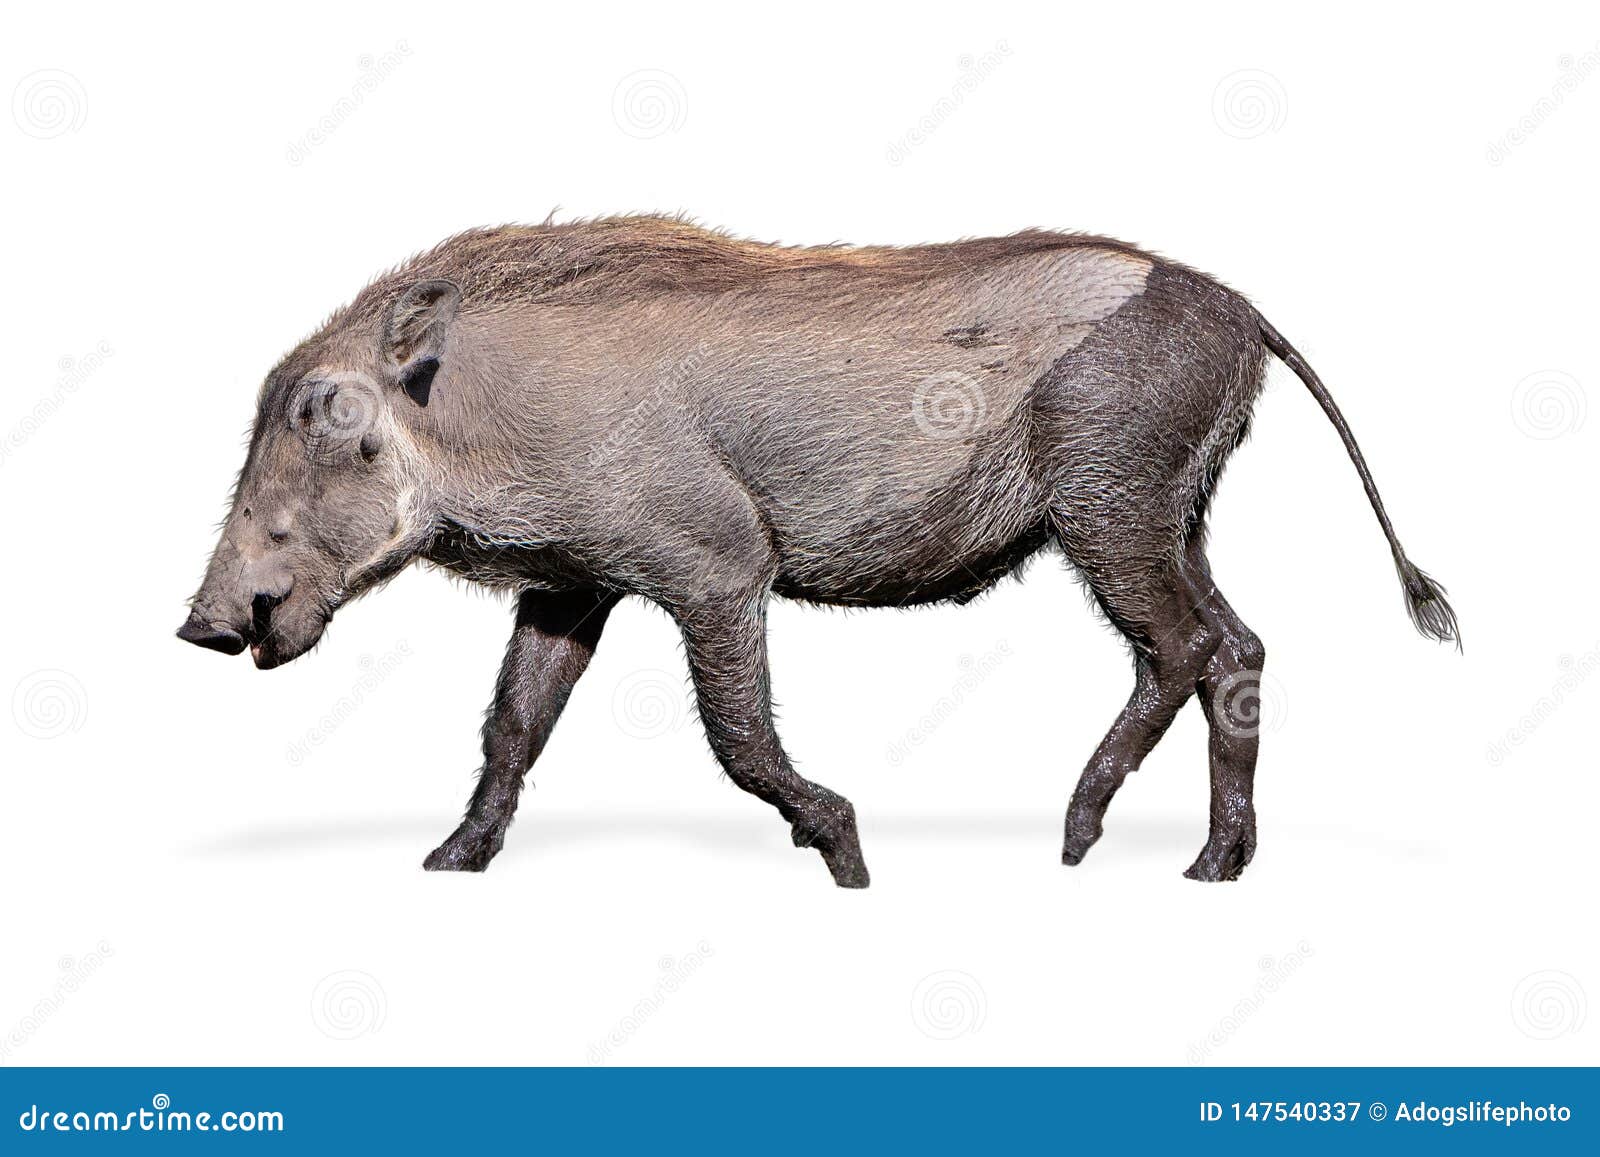 baby warthog walking side 